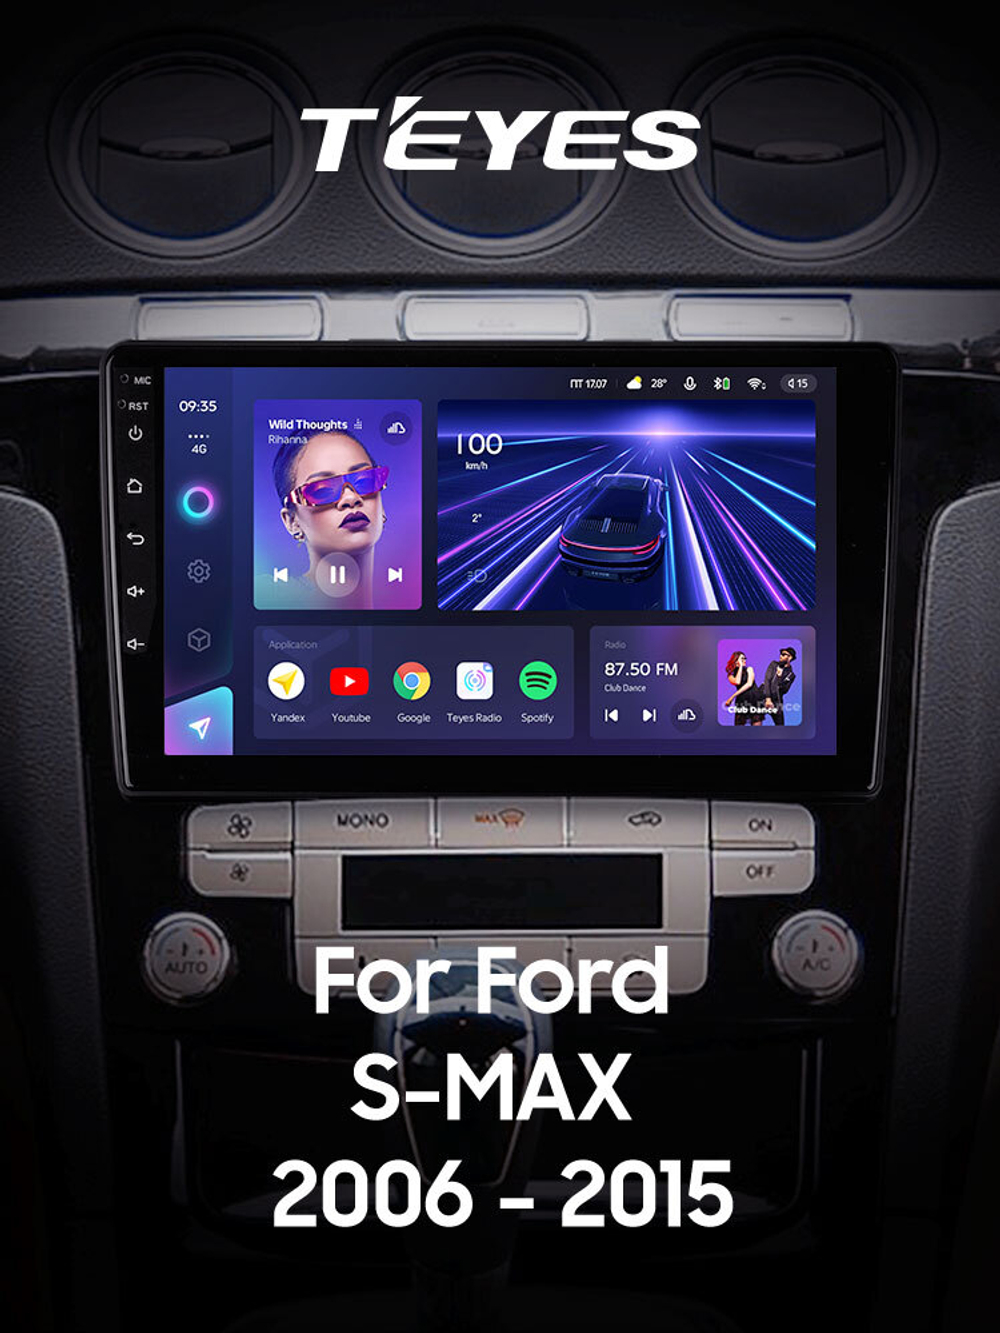 Teyes CC3 9"для Ford S-MAX 2006-2015